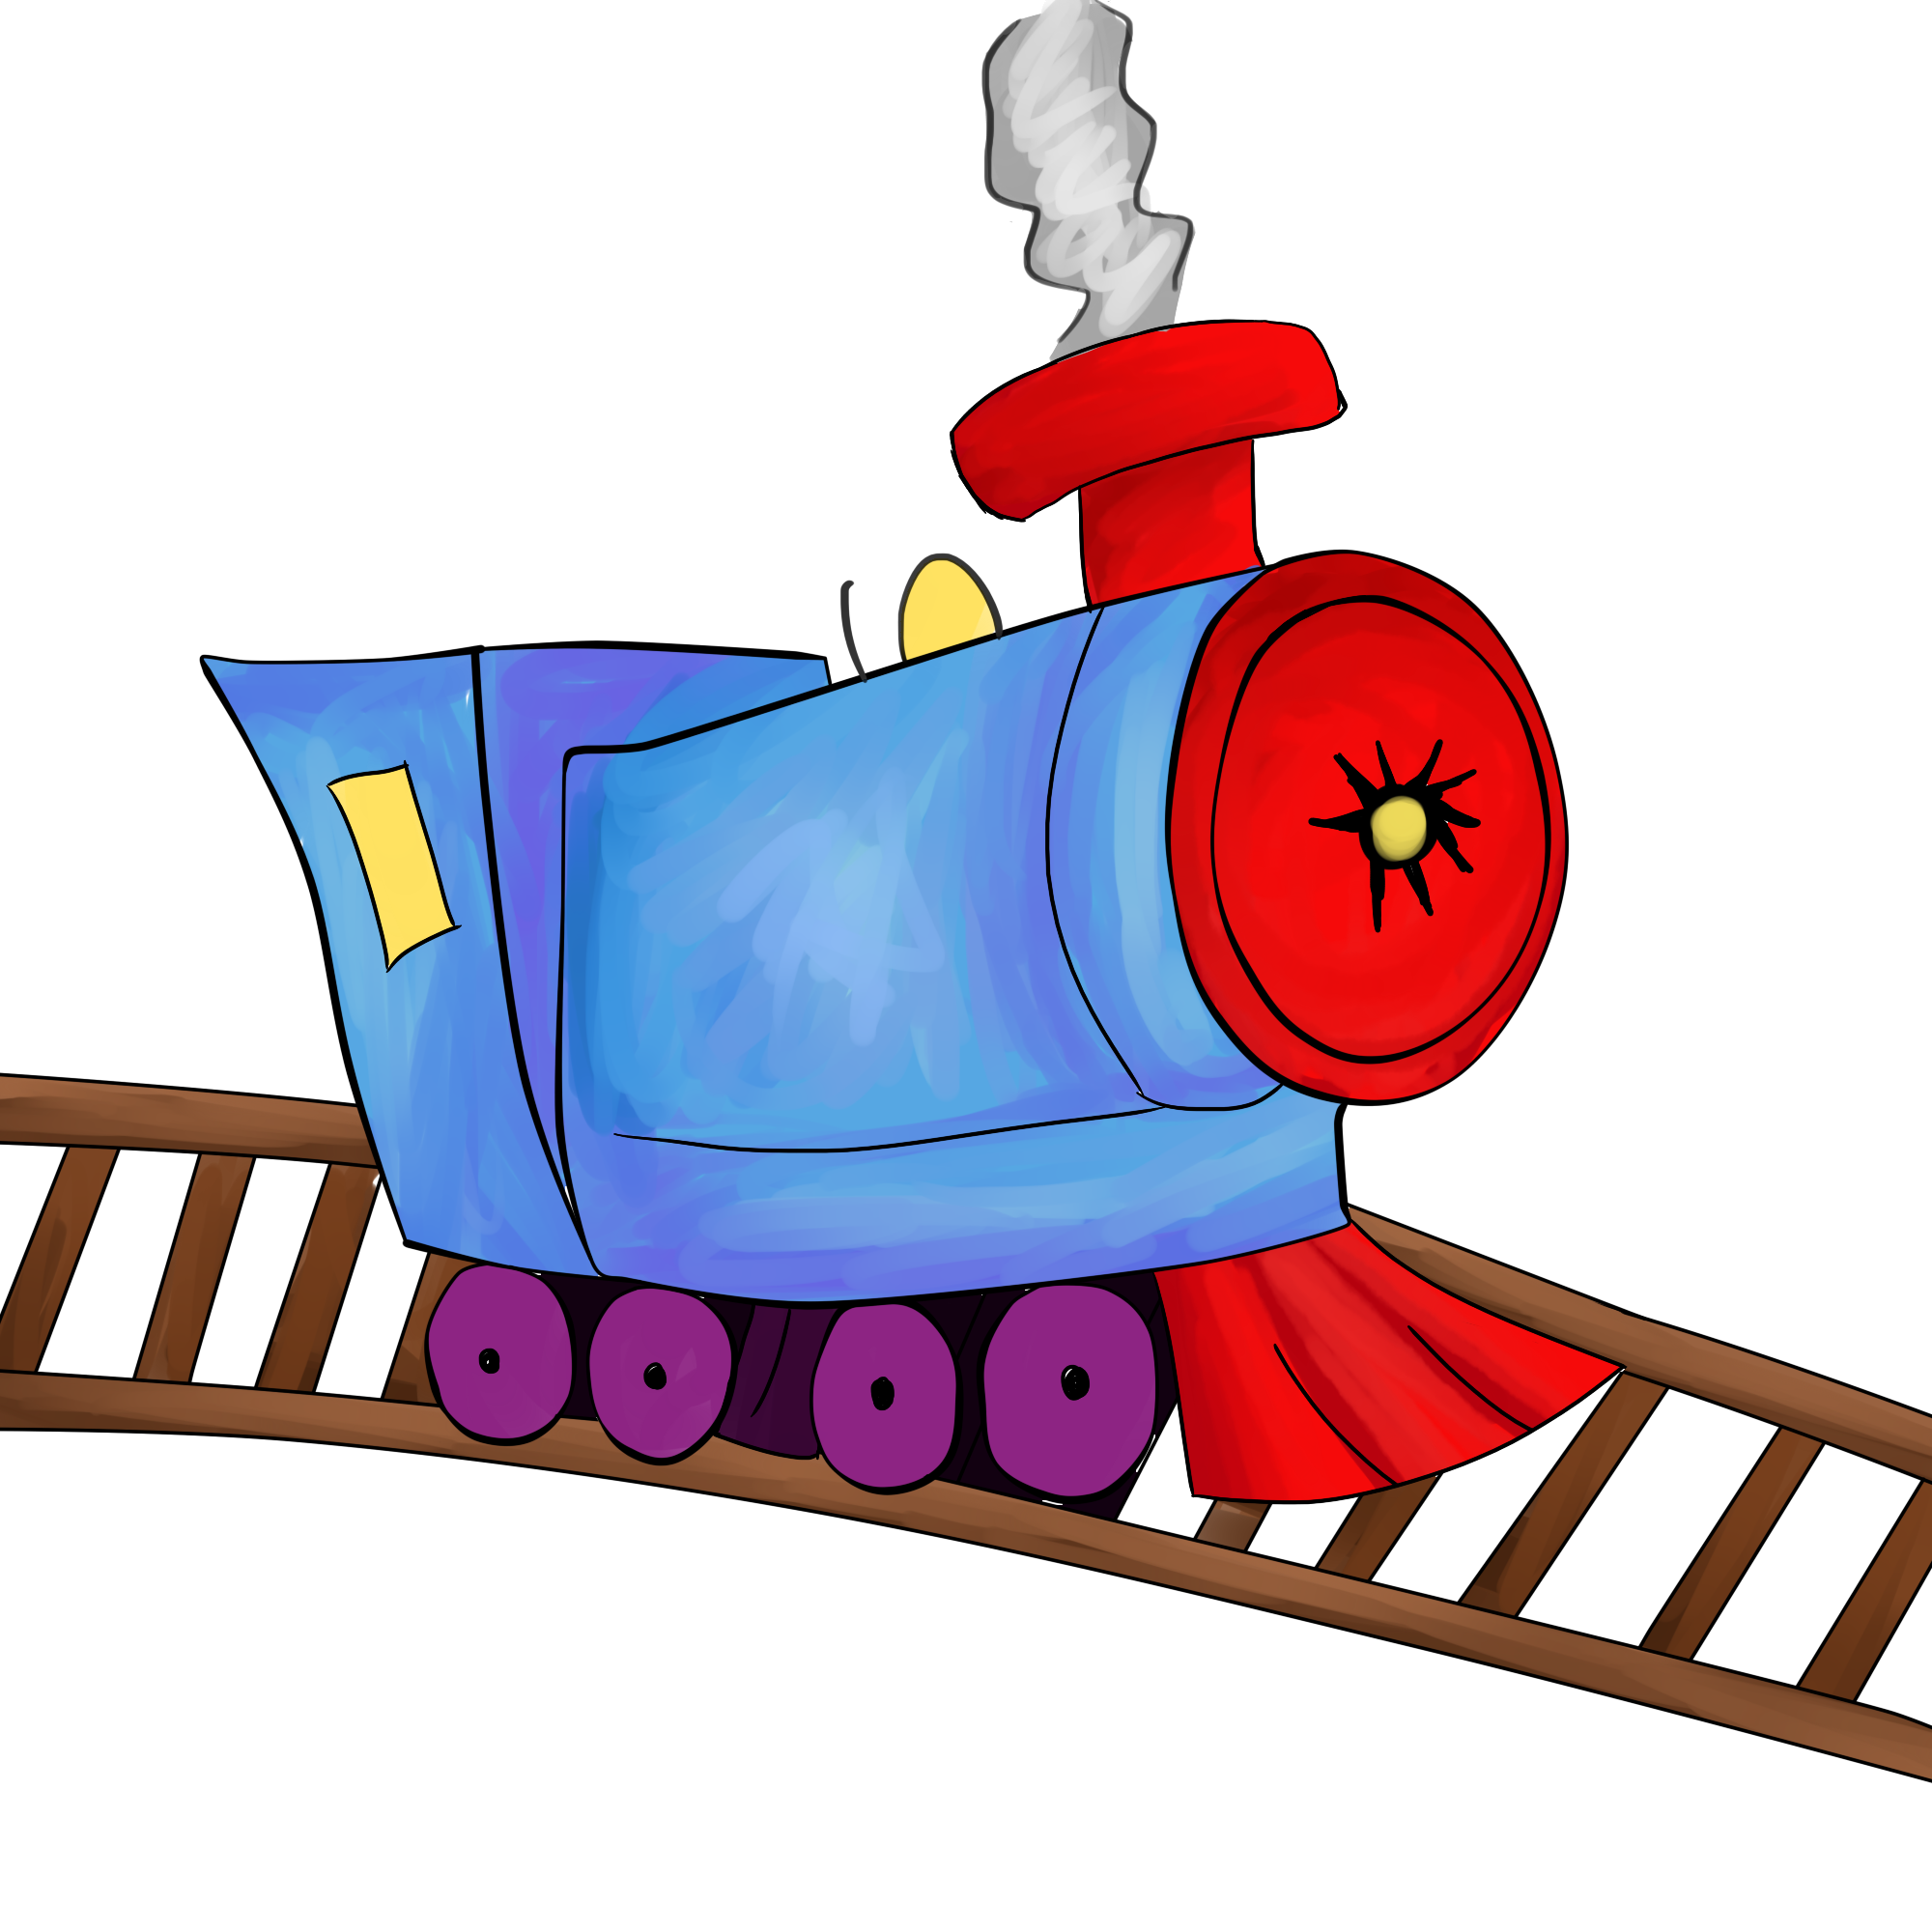 Cartoon Train Clipart